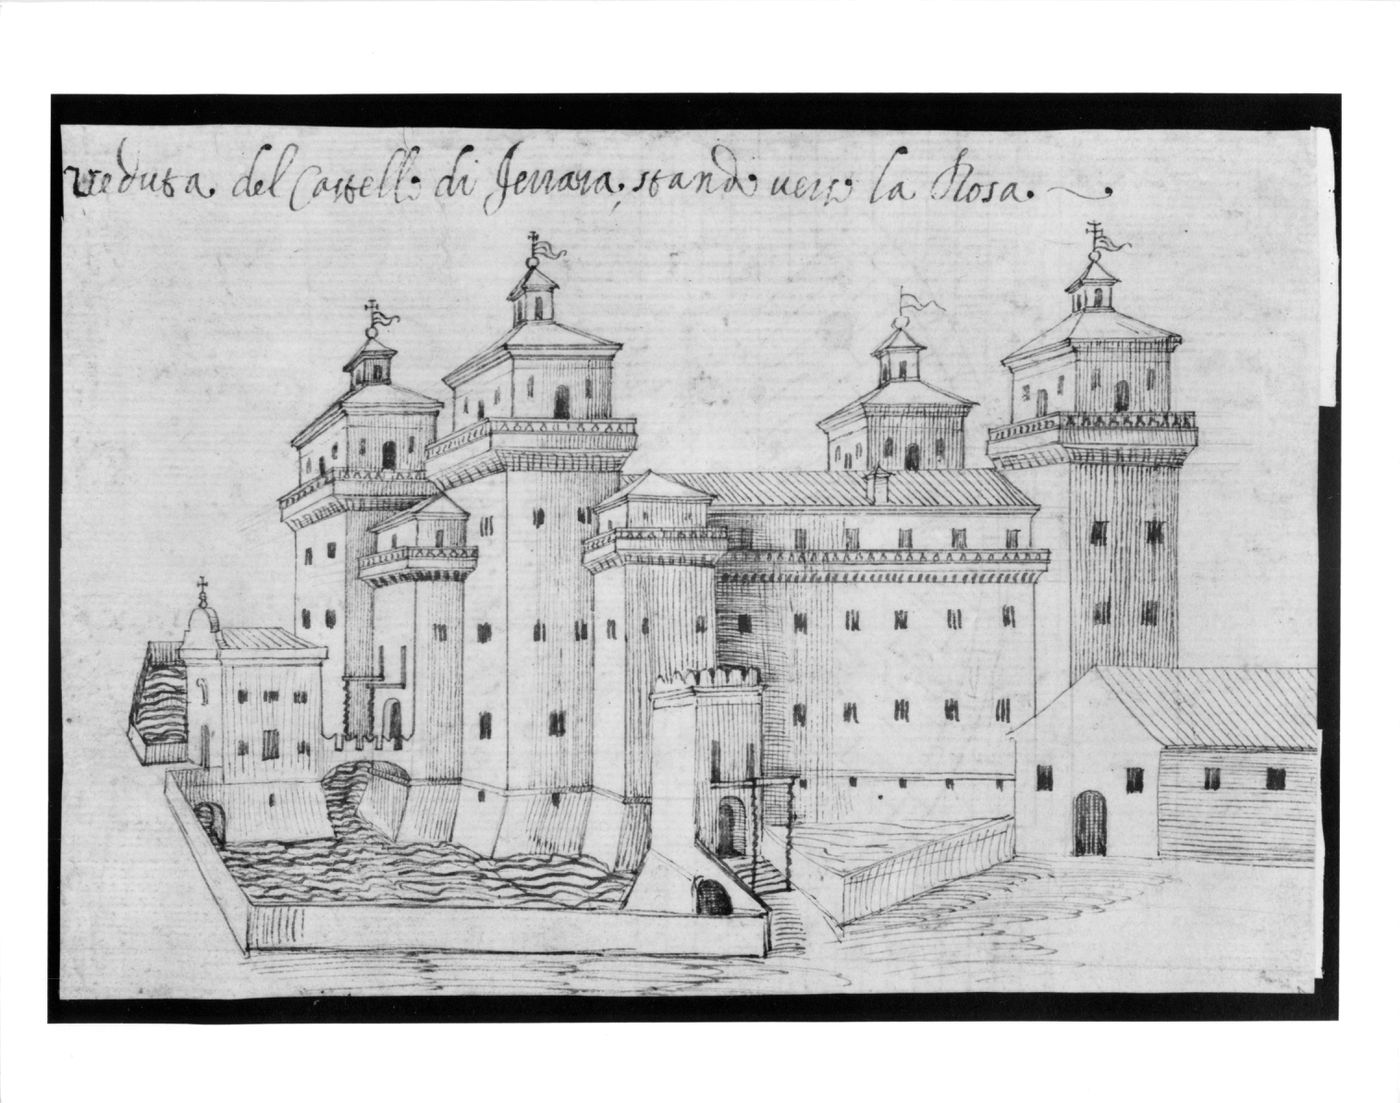 View of the Castello di Ferrara